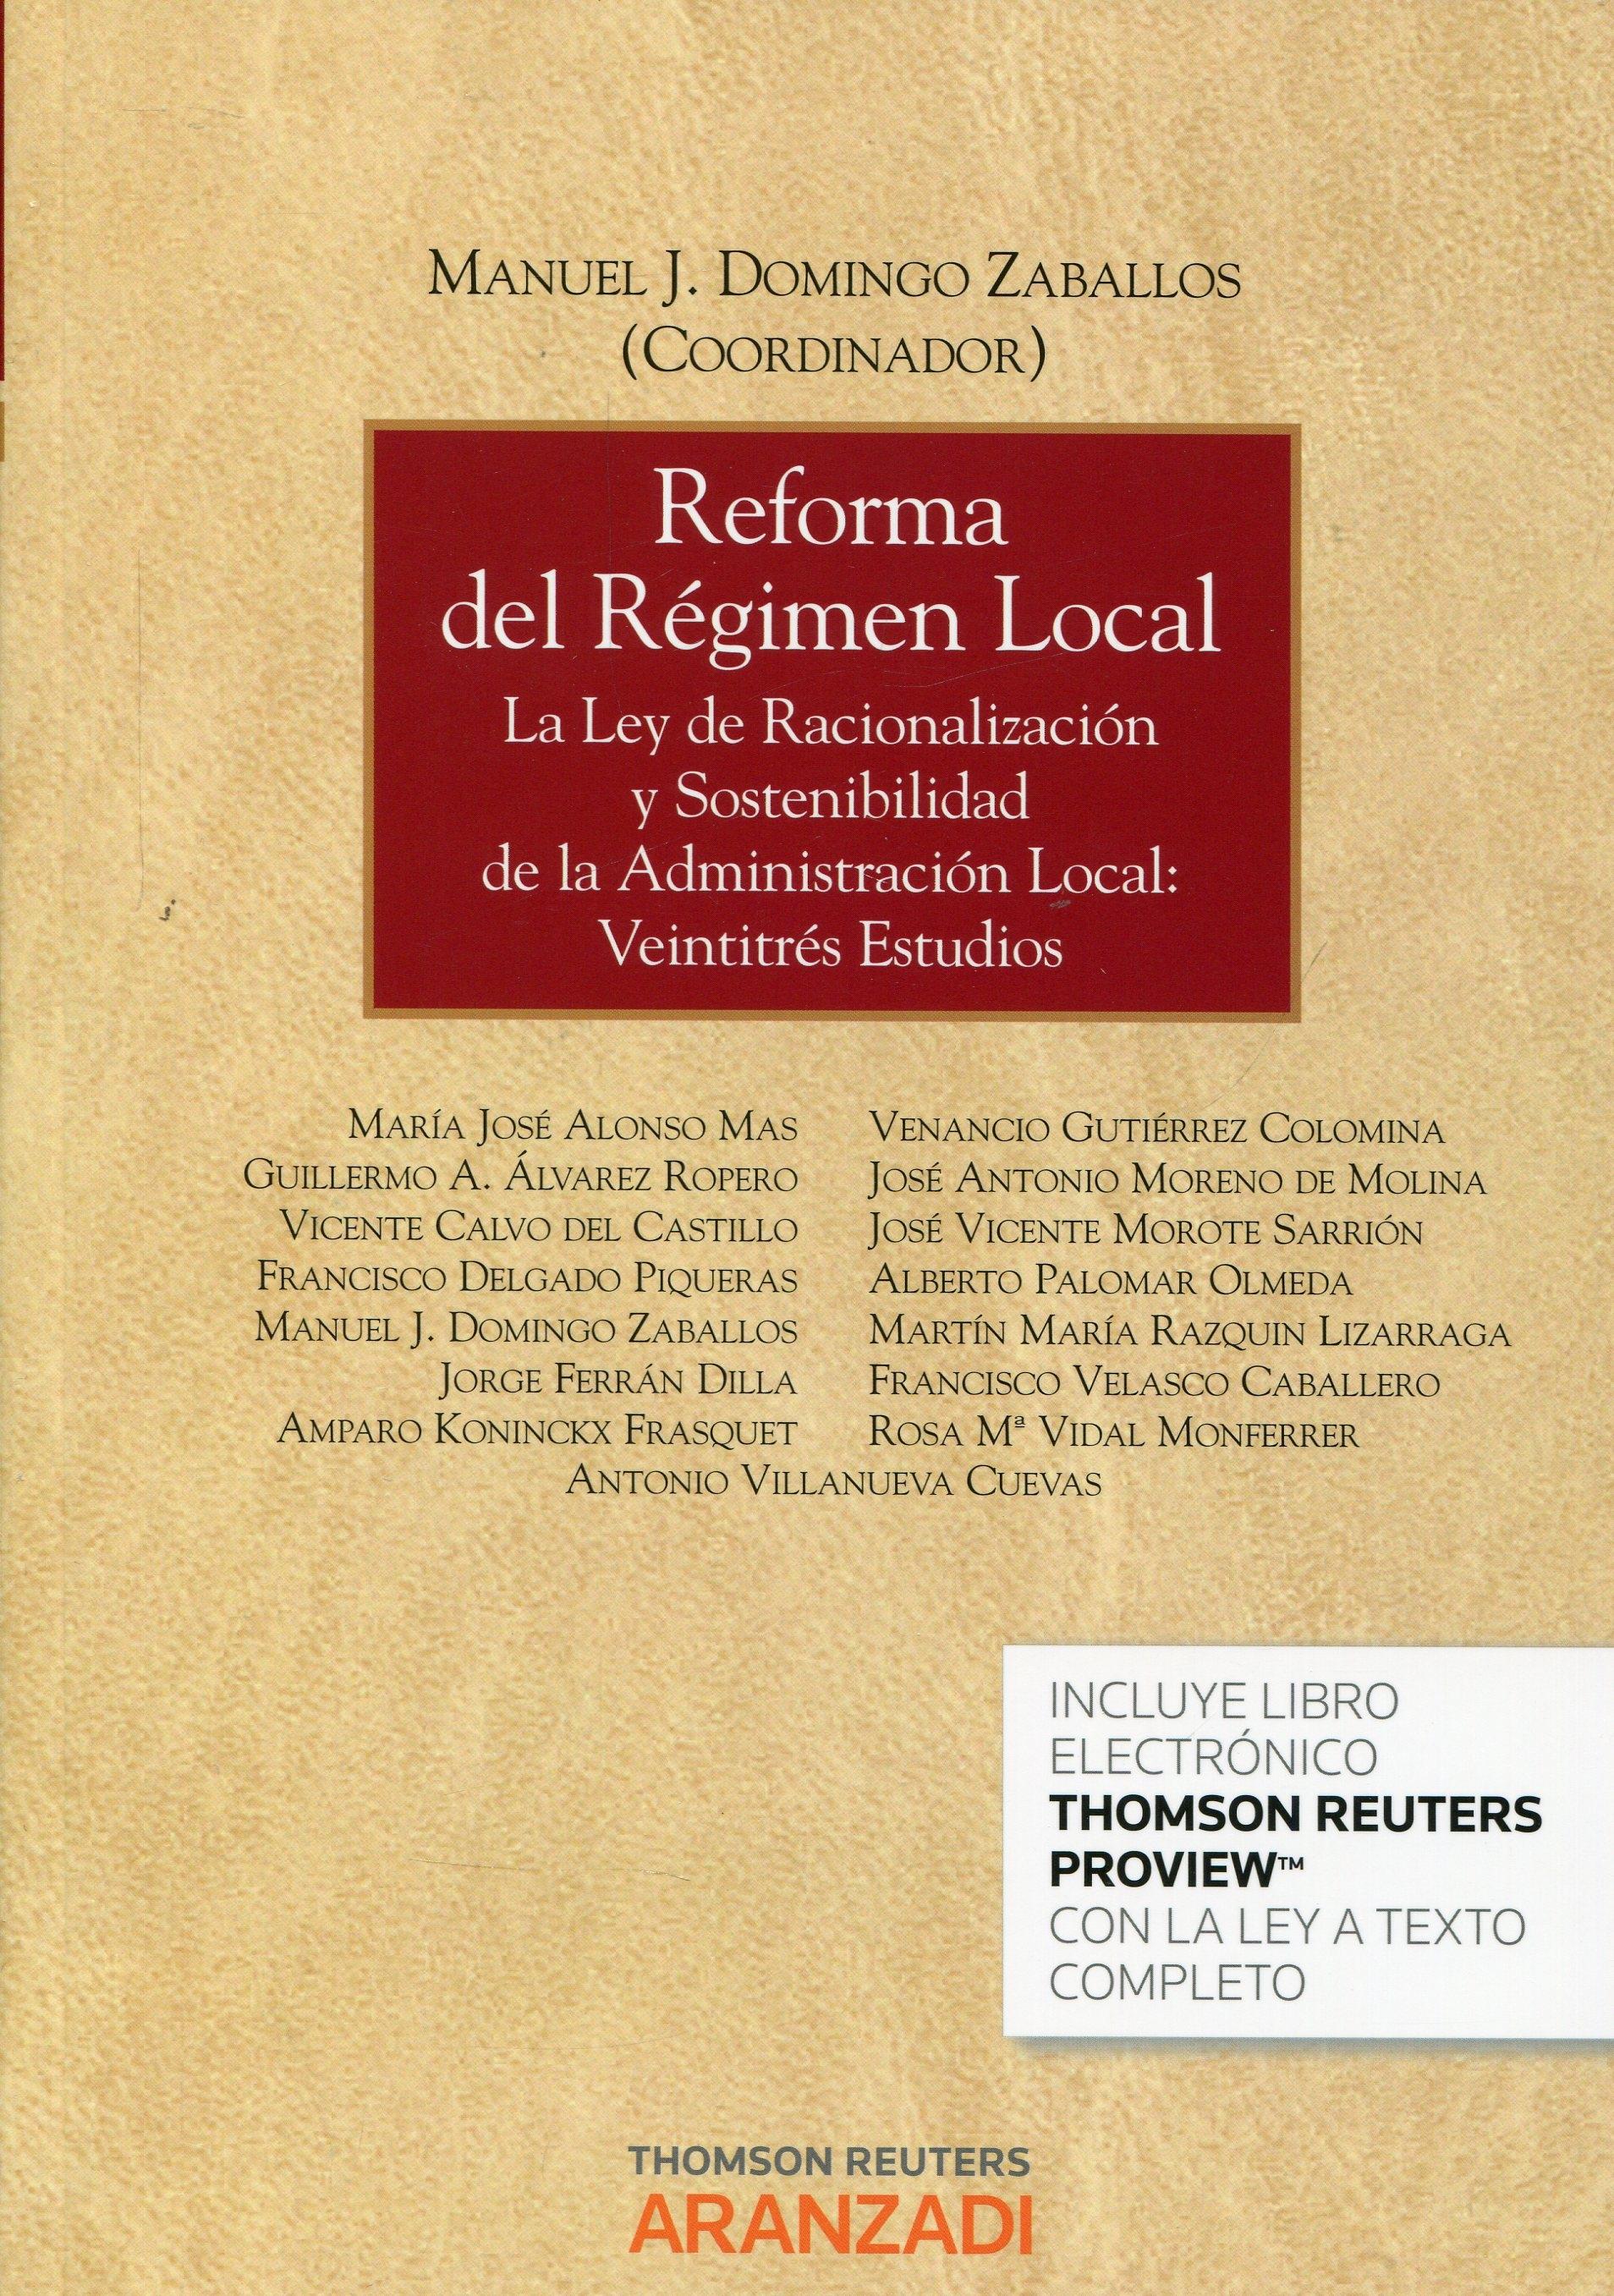 Reforma del Régimen Local "La Ley de racionalización y sostenibilidad de las administración local: veintitrés estudios"